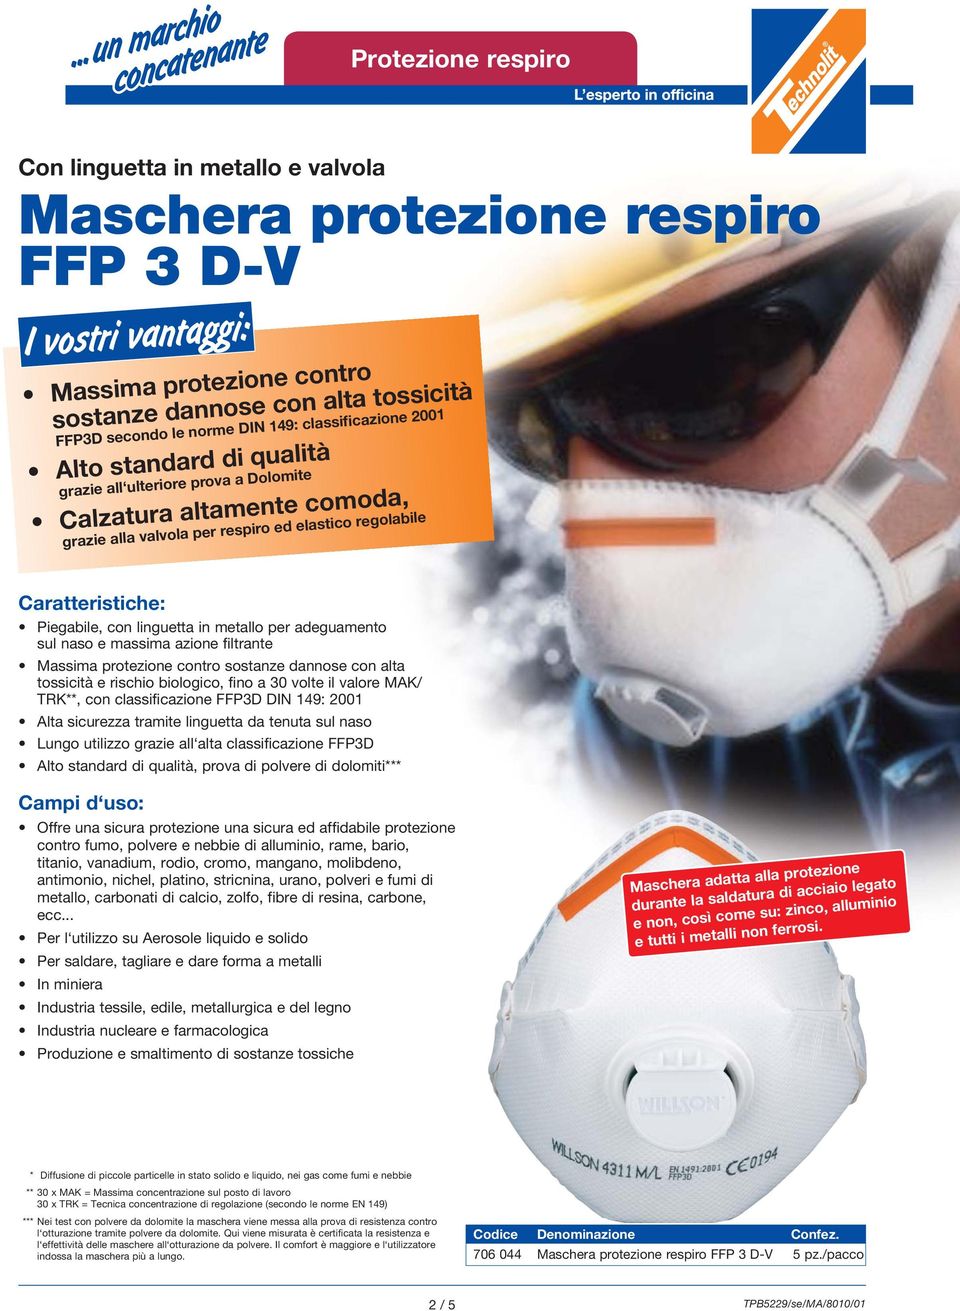 adeguamento sul naso e massima azione filtrante Massima protezione contro sostanze dannose con alta tossicità e rischio biologico, fino a 30 volte il valore MAK/ TRK**, con classificazione FFP3D DIN